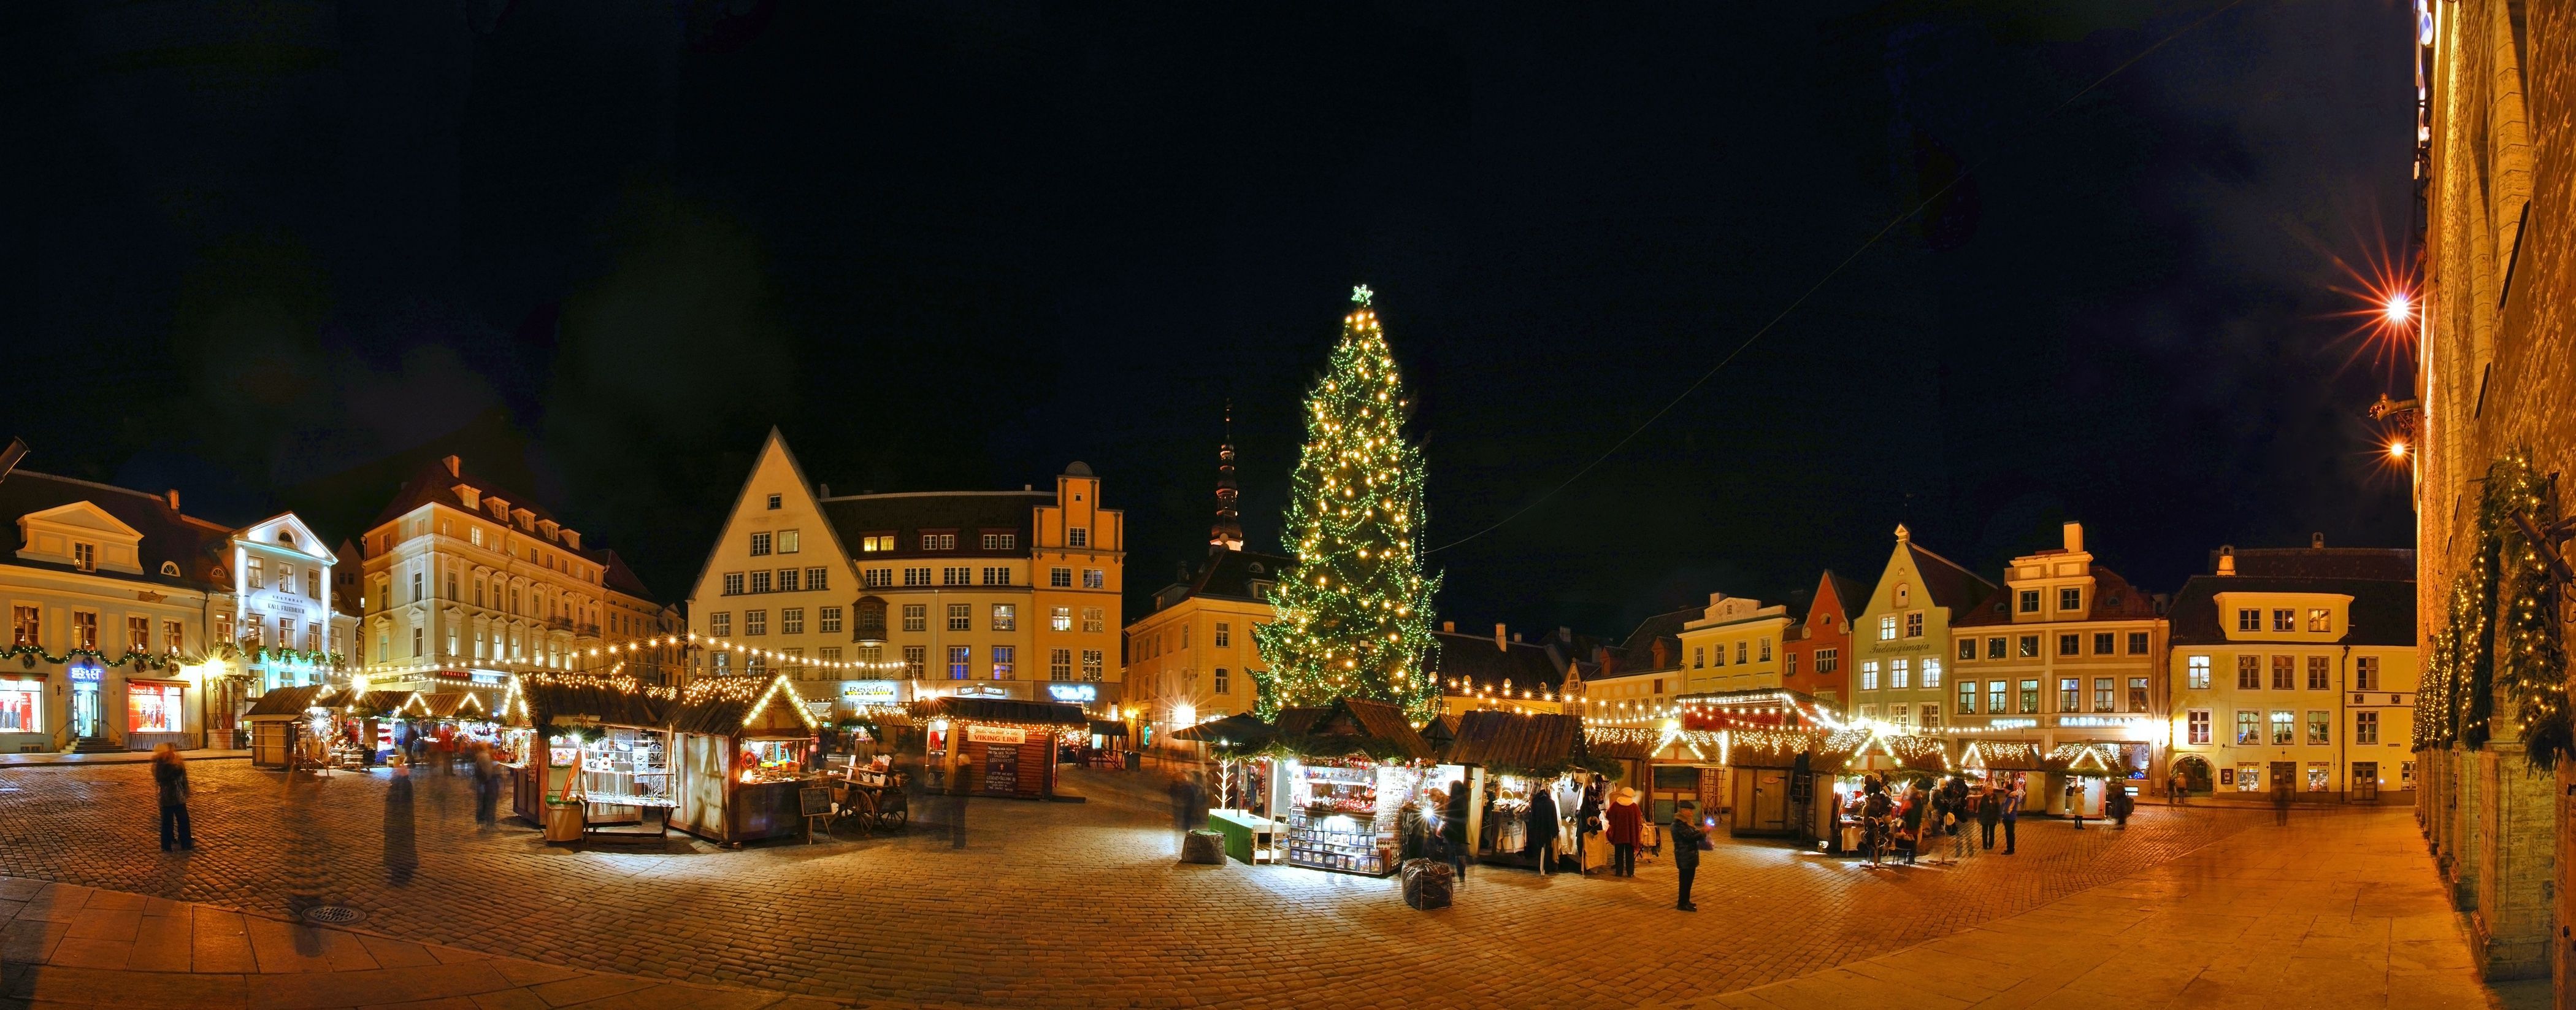 Download Wallpaper night new year christmas tree tallinn estonia, 4200x Old Town of Tallinn, Estonia